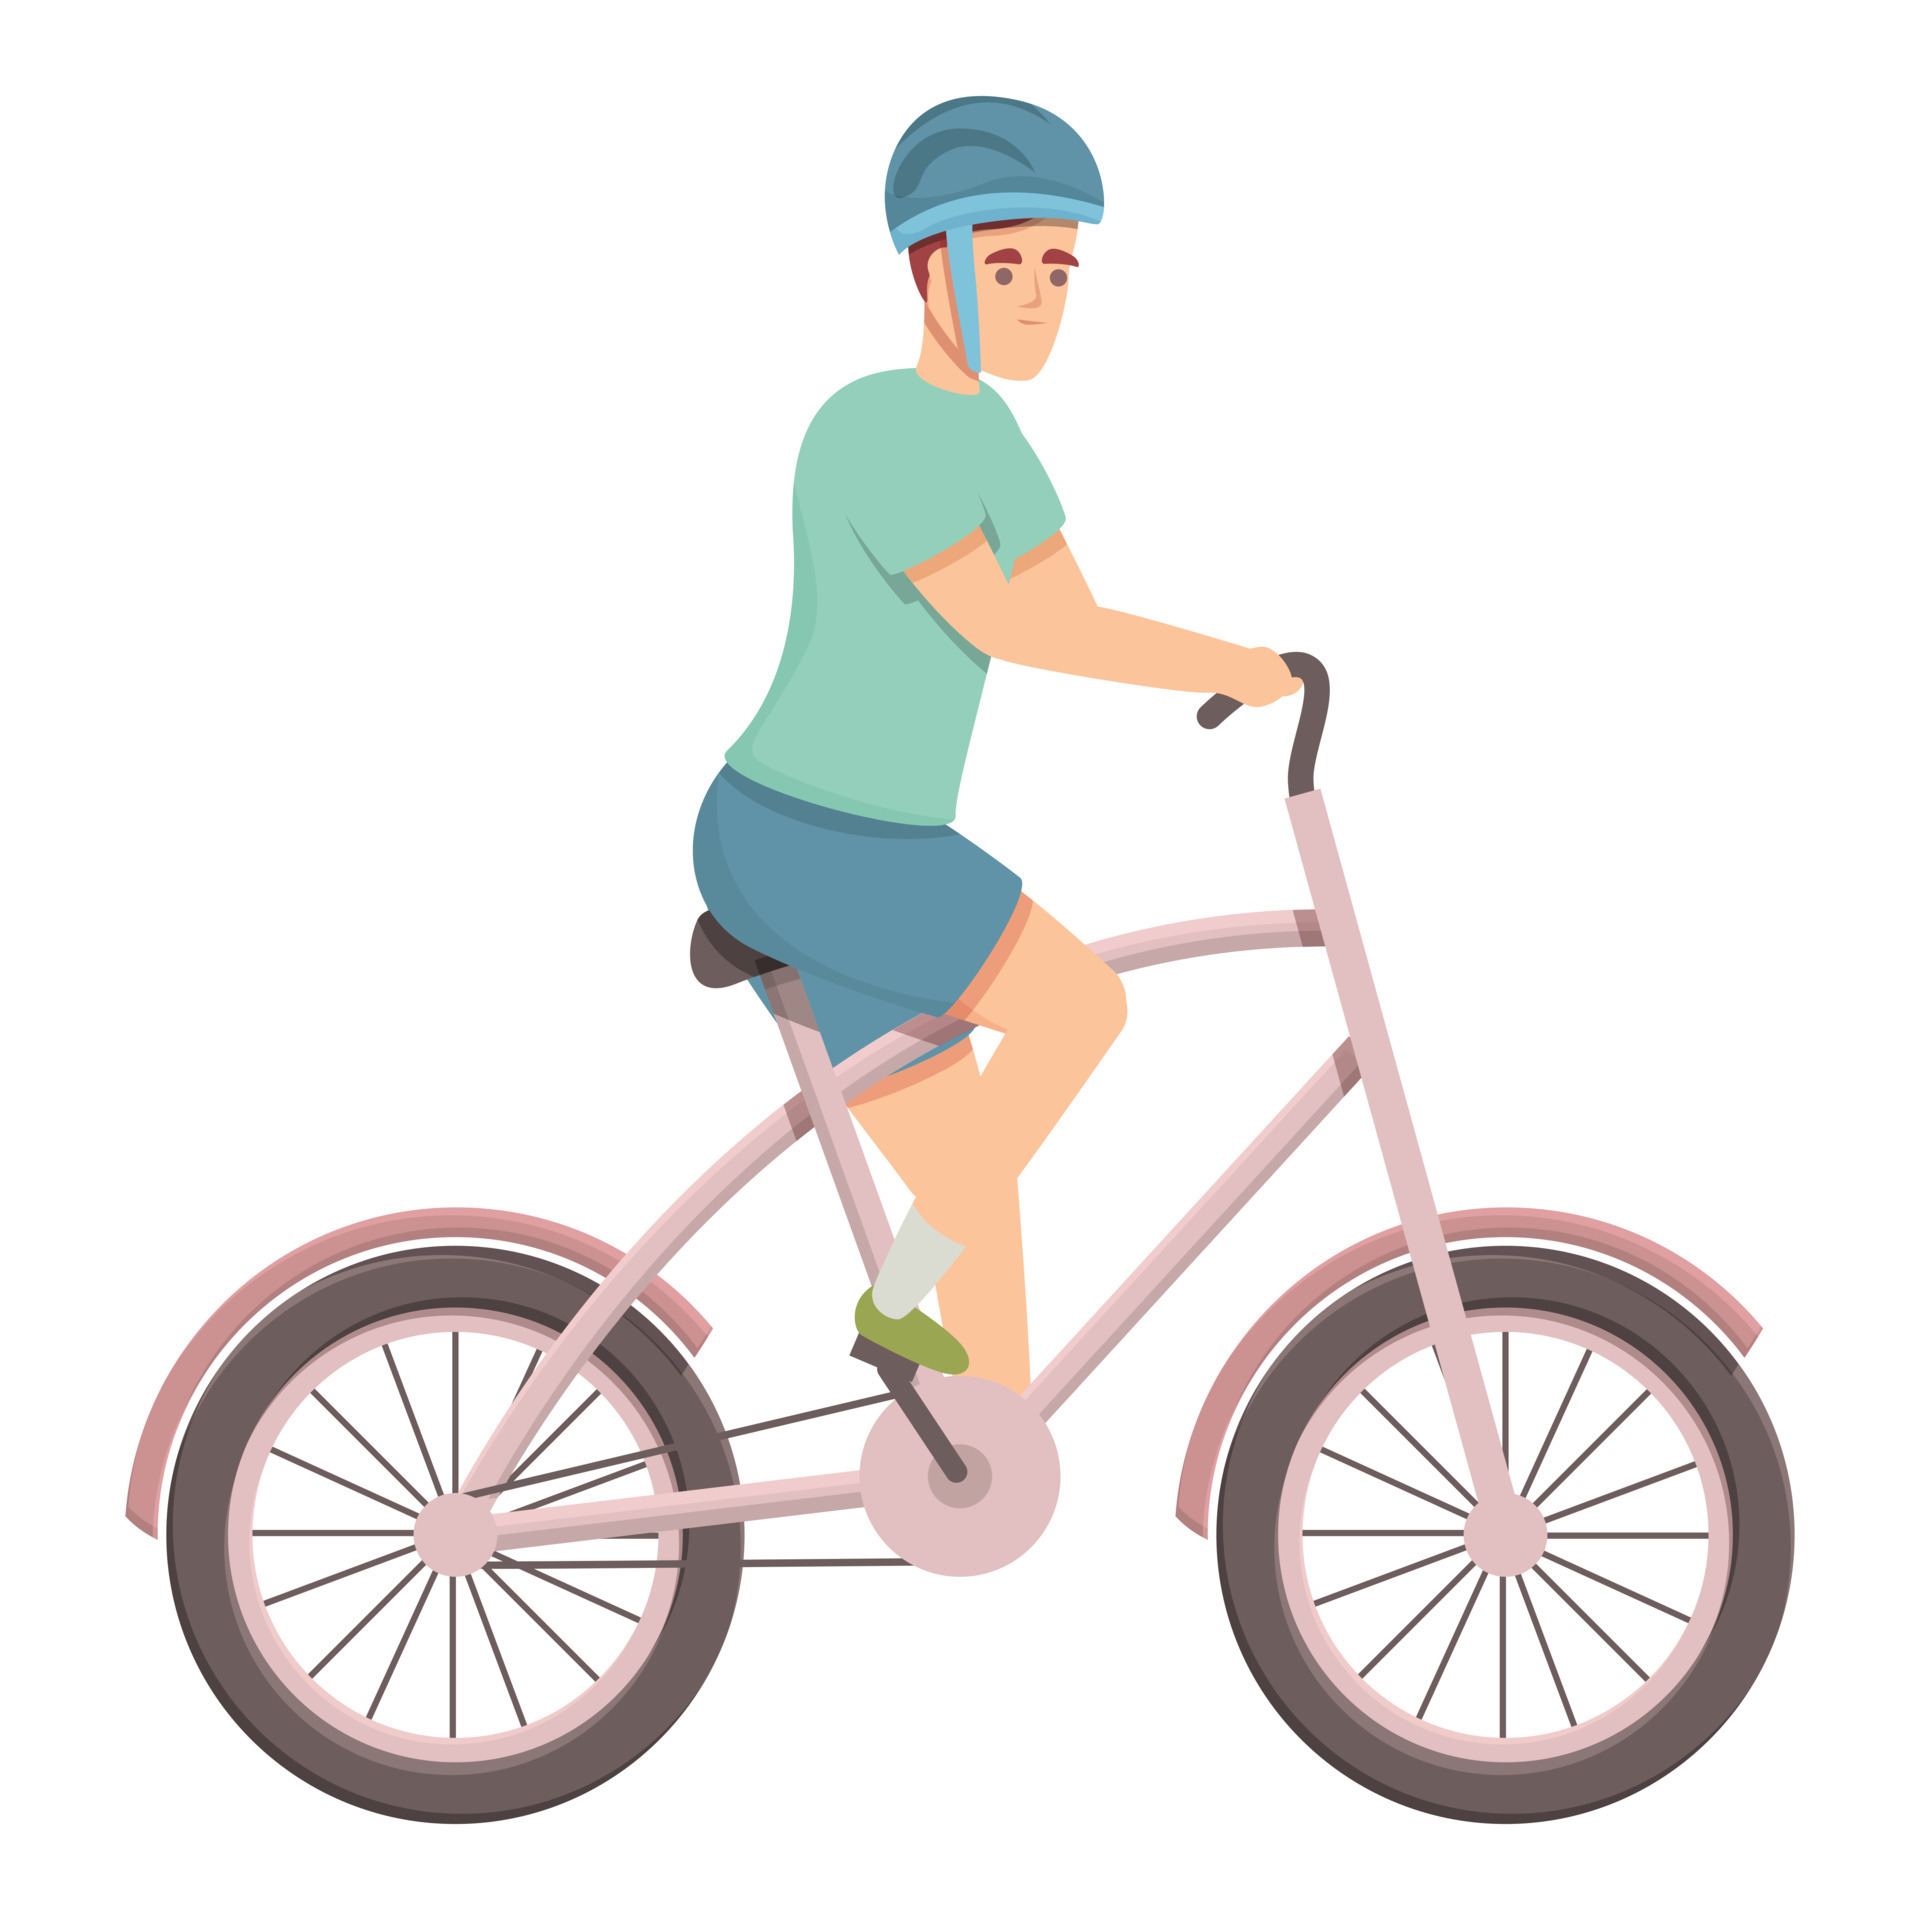 Bicycle marathon runner icon cartoon vector. Bike race 14351852 Vector Art  at Vecteezy